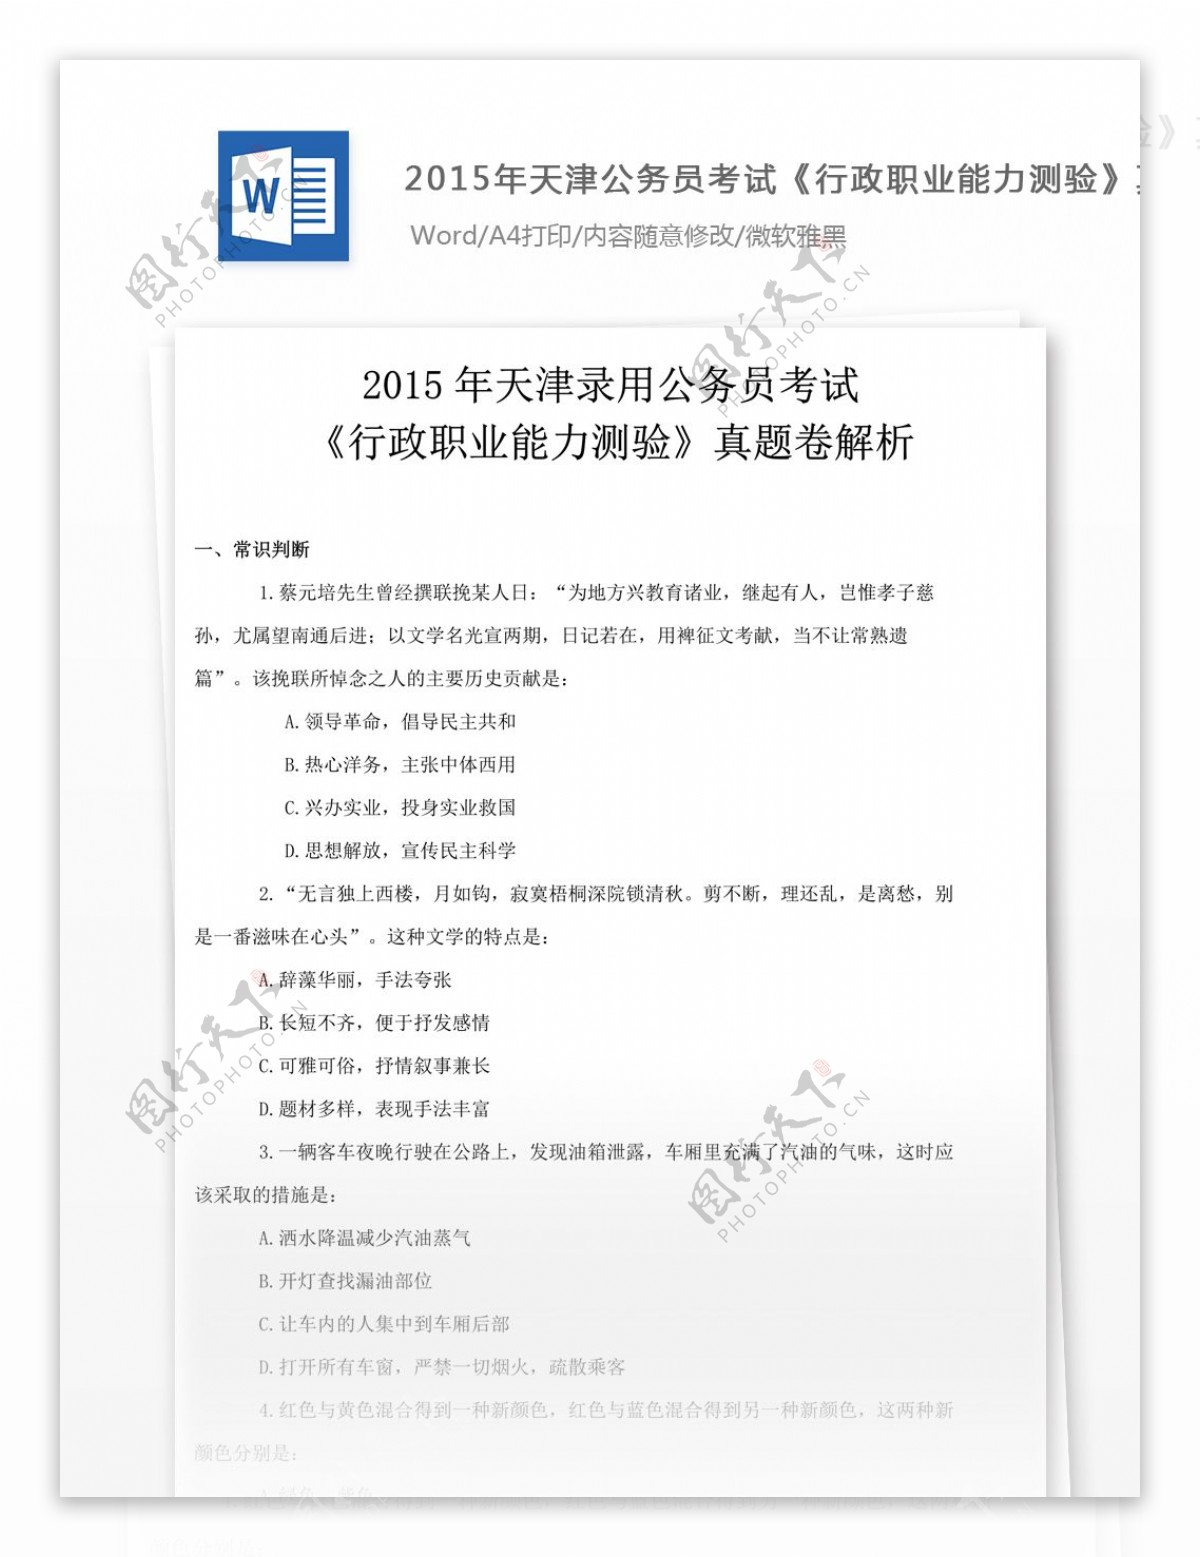 2015年天津公行政职业能力测验真题试卷